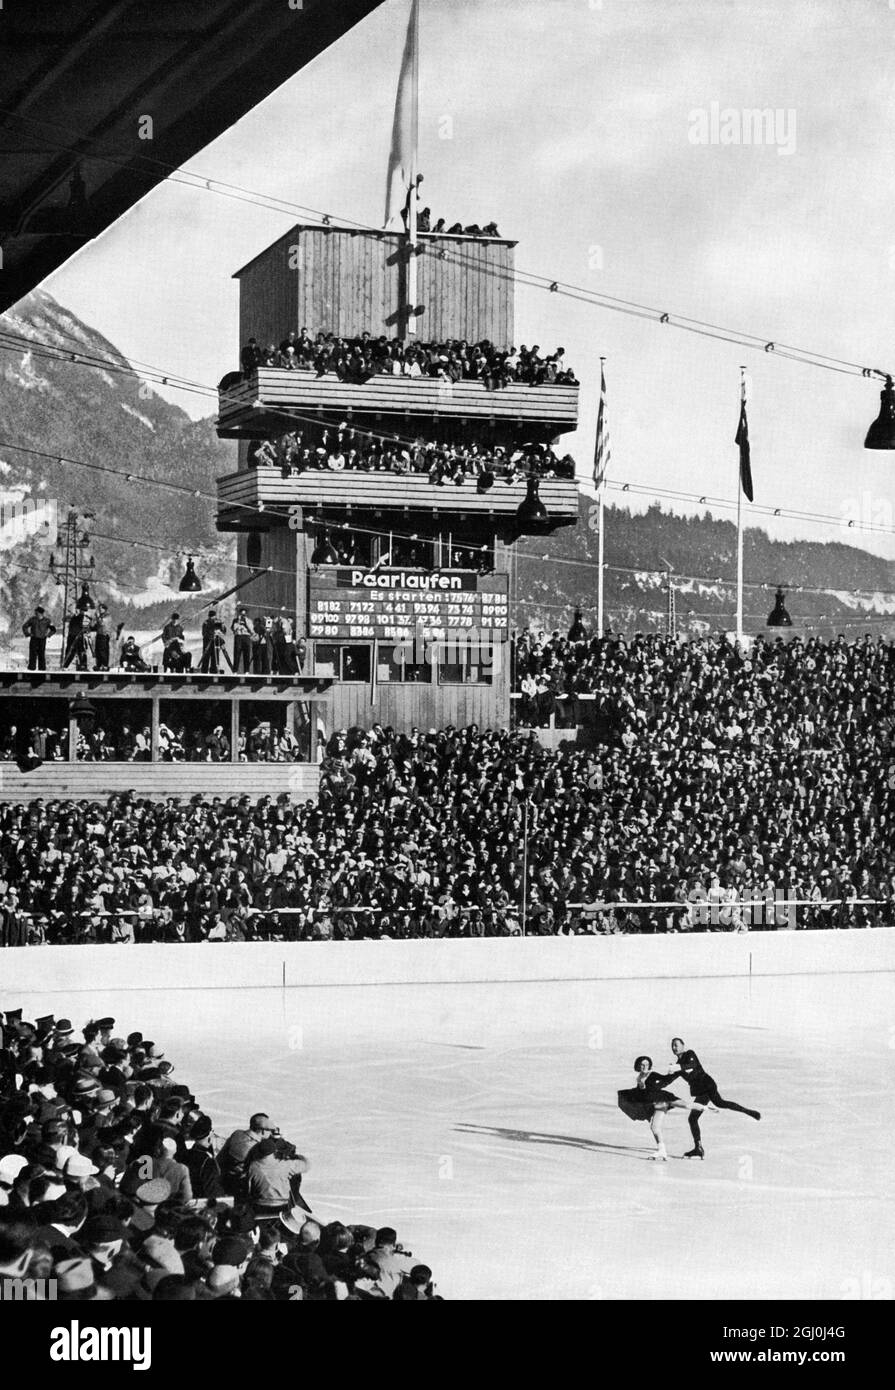 Olimpiadi del 1936 - tutti hanno visto il trionfo della coppia di maestri Maxie Herber & Ernst Baier - coppia di pattinatori. Ernst Baier (Zittau, 27 settembre 1905 – Garmisch, 8 luglio 2001) è stato un . Divenne campione olimpico in coppia nel 1936 insieme a Maxi Herber. I due skater hanno vinto anche diversi campionati mondiali ed europei. ©TopFoto Foto Stock